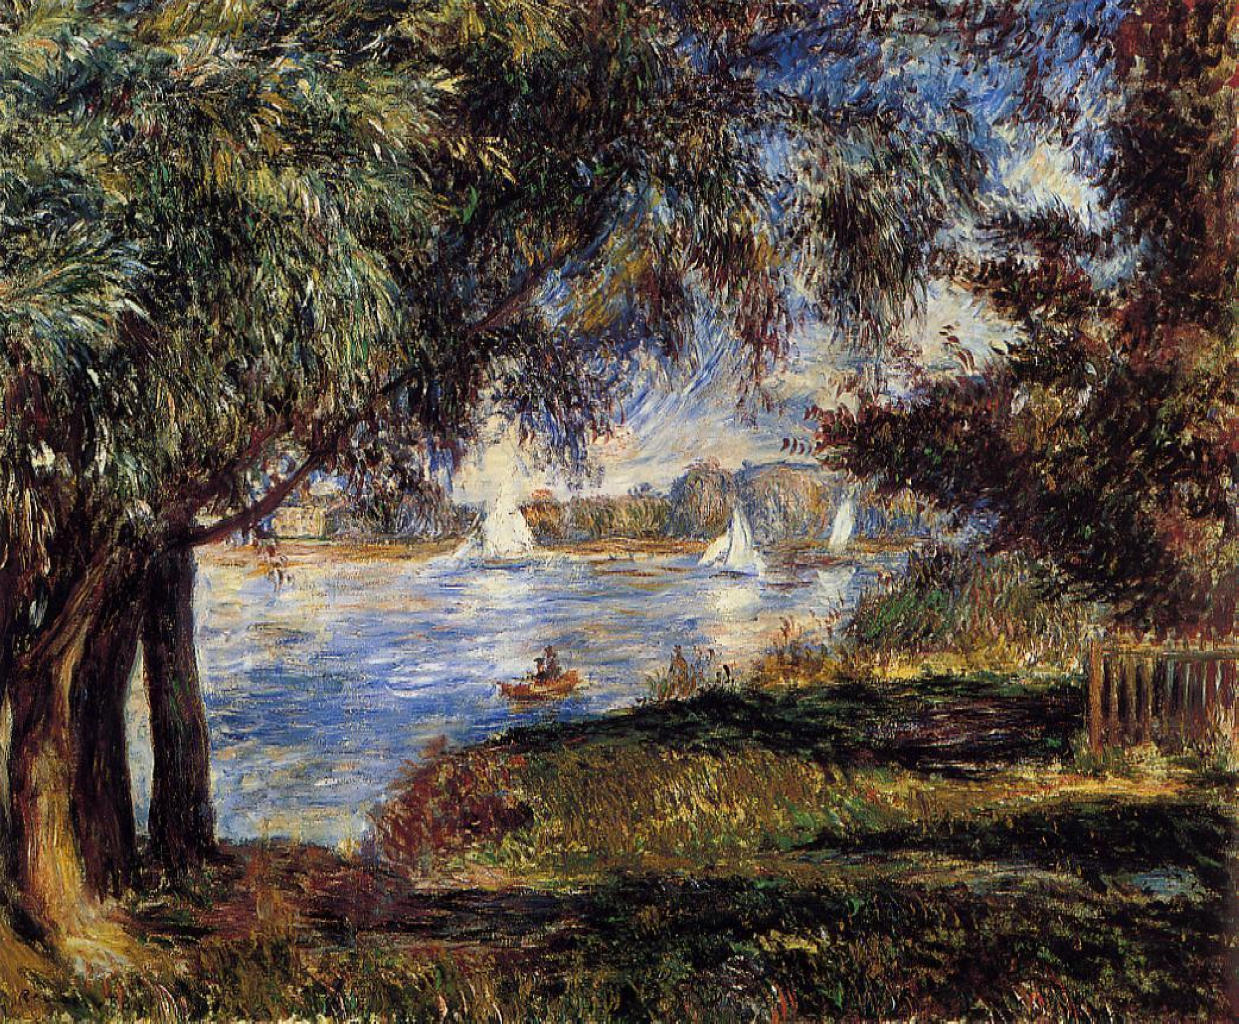 Pierre+Auguste+Renoir-1841-1-19 (457).jpg